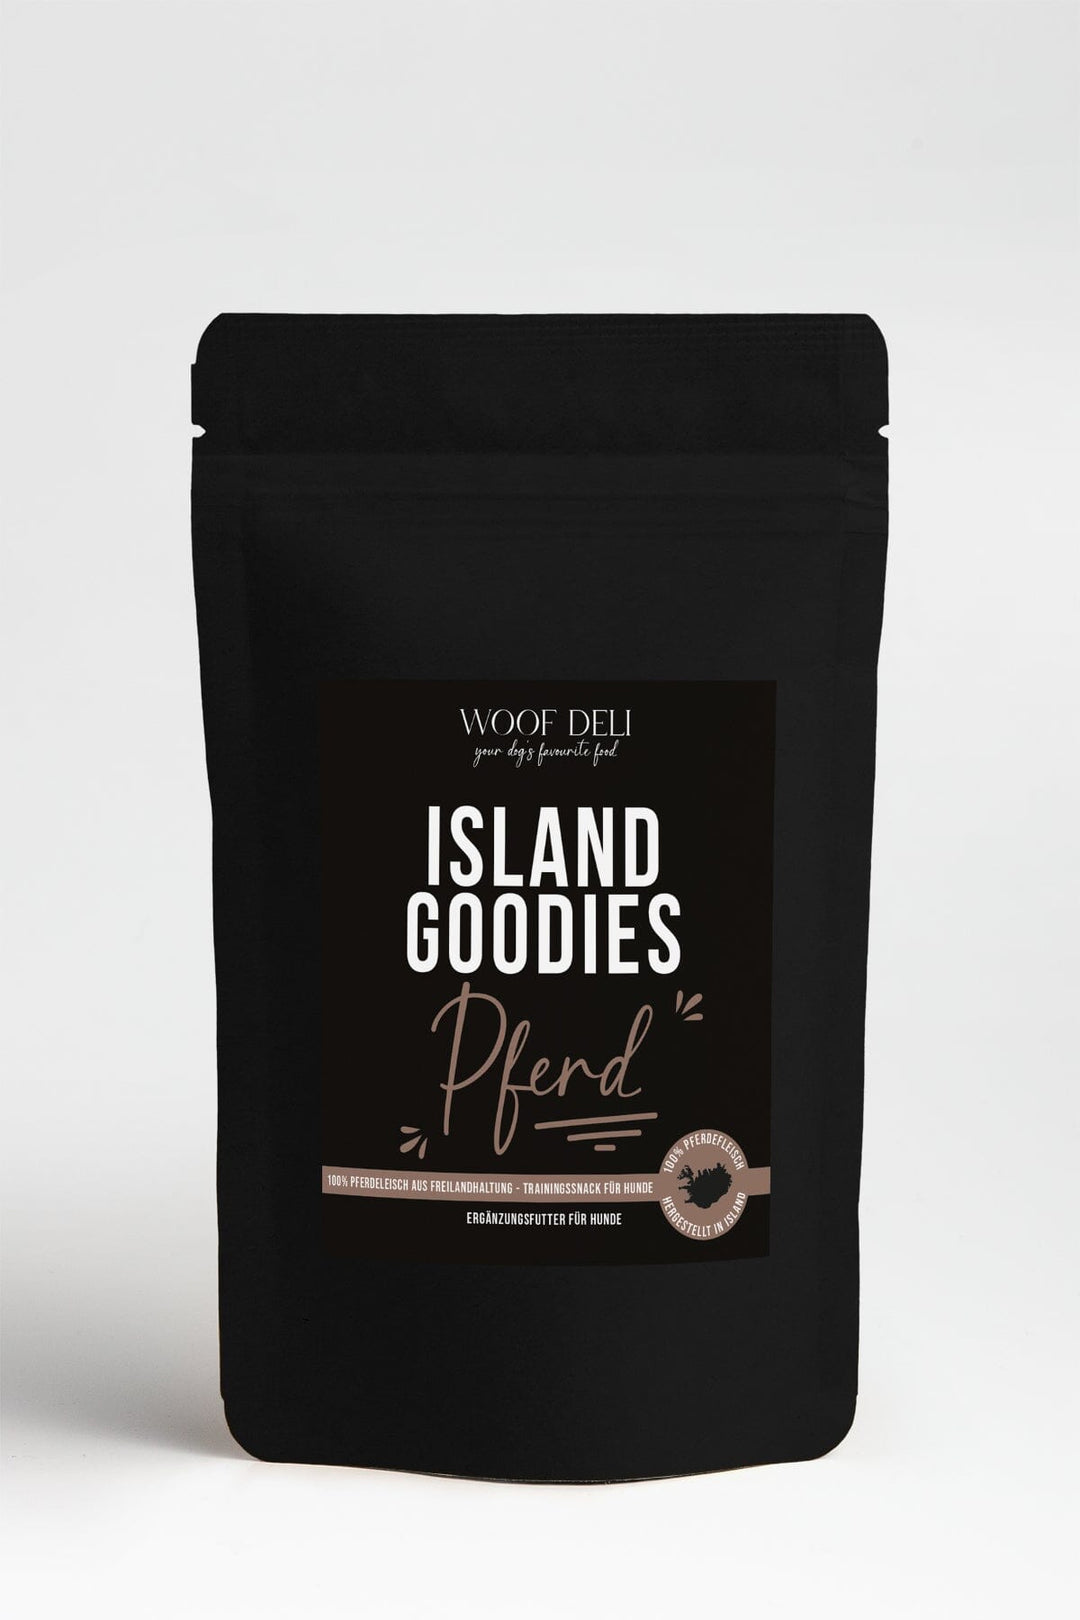 Island Goodies 100% Pferdefleisch WOOF DELI 